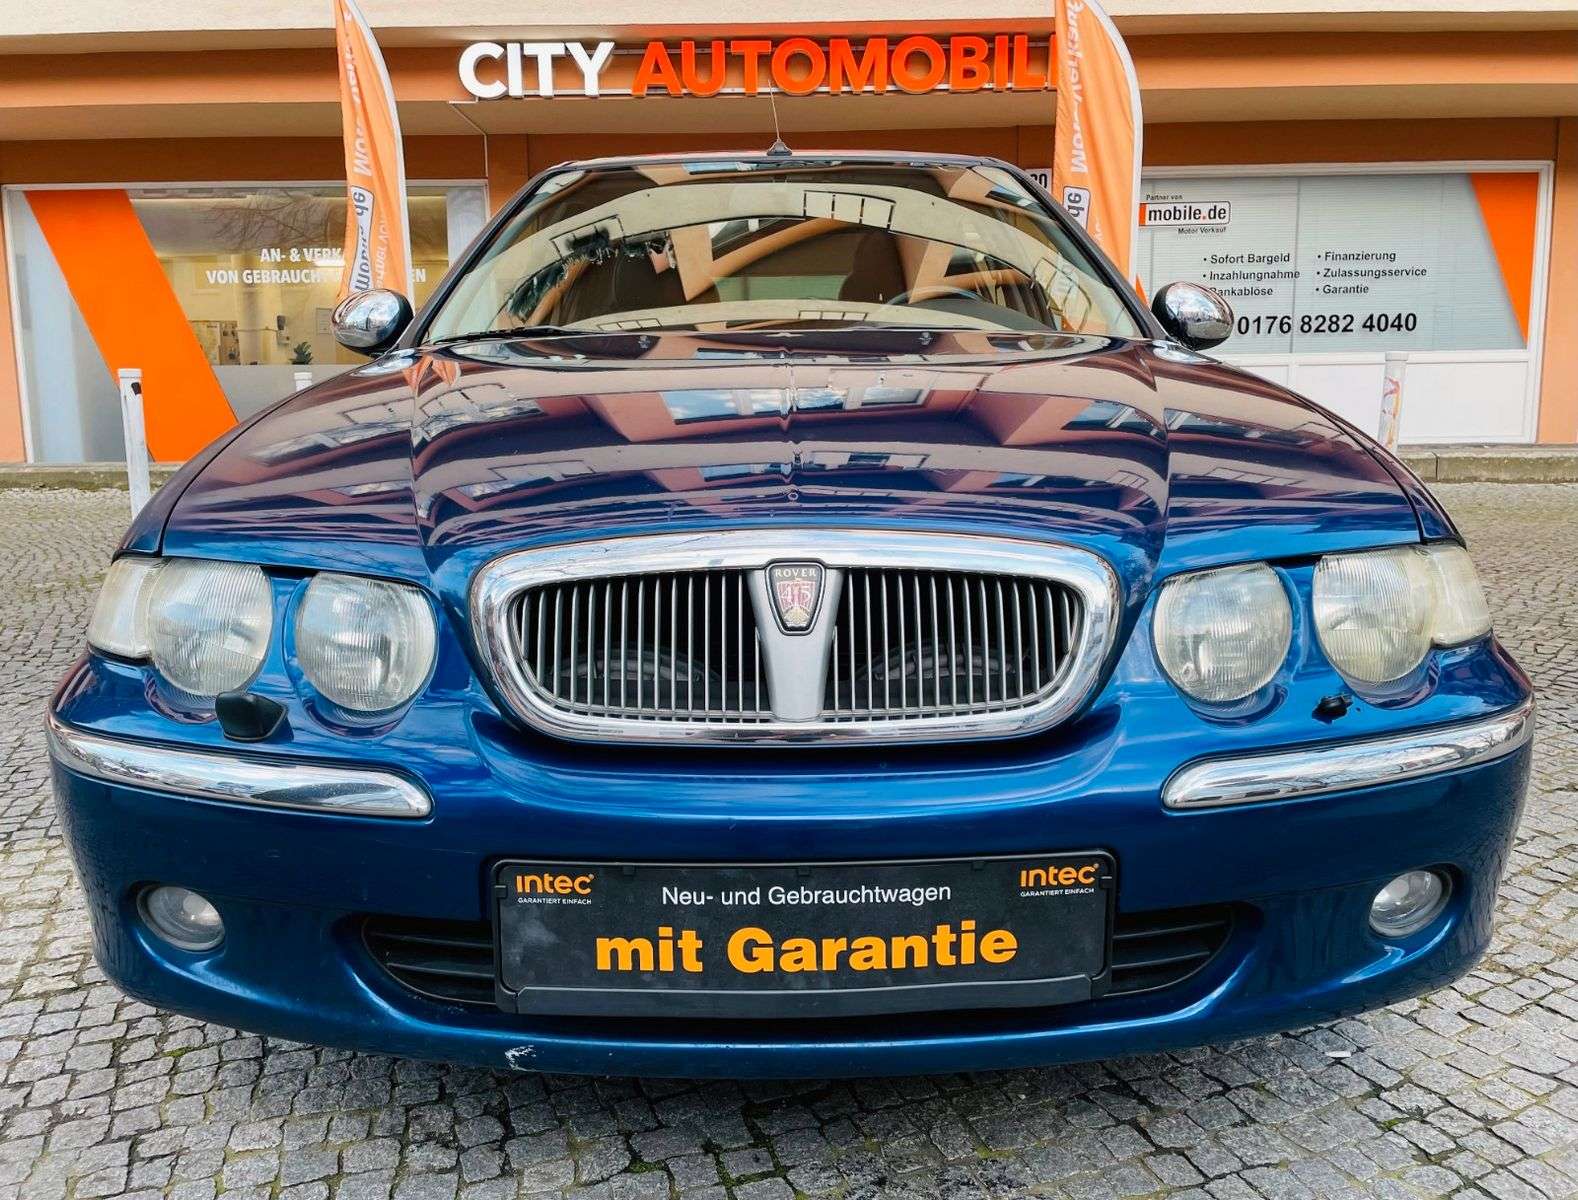 Rover 45 Sedan in Blue used in Berlin for € 1,950.-